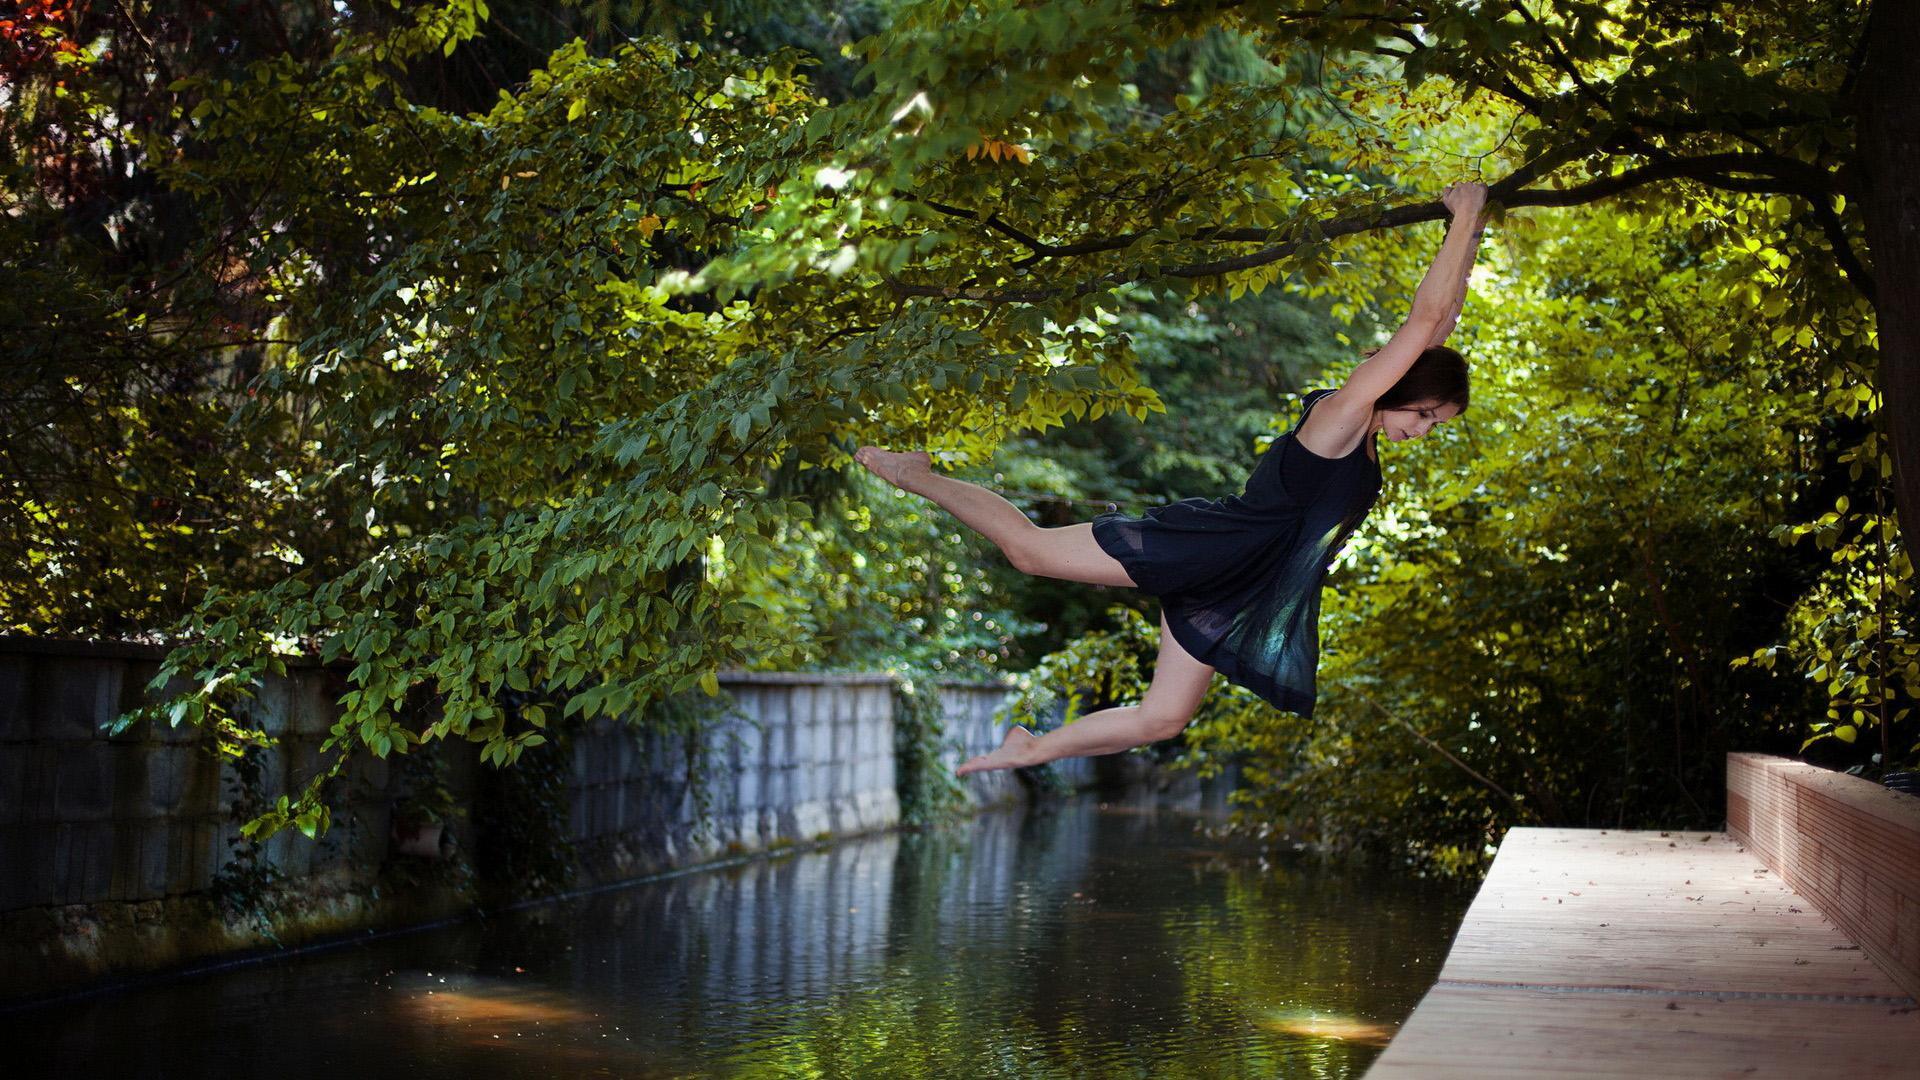 wallpaper pemandangan indah,nature,water,tree,flip (acrobatic),leisure